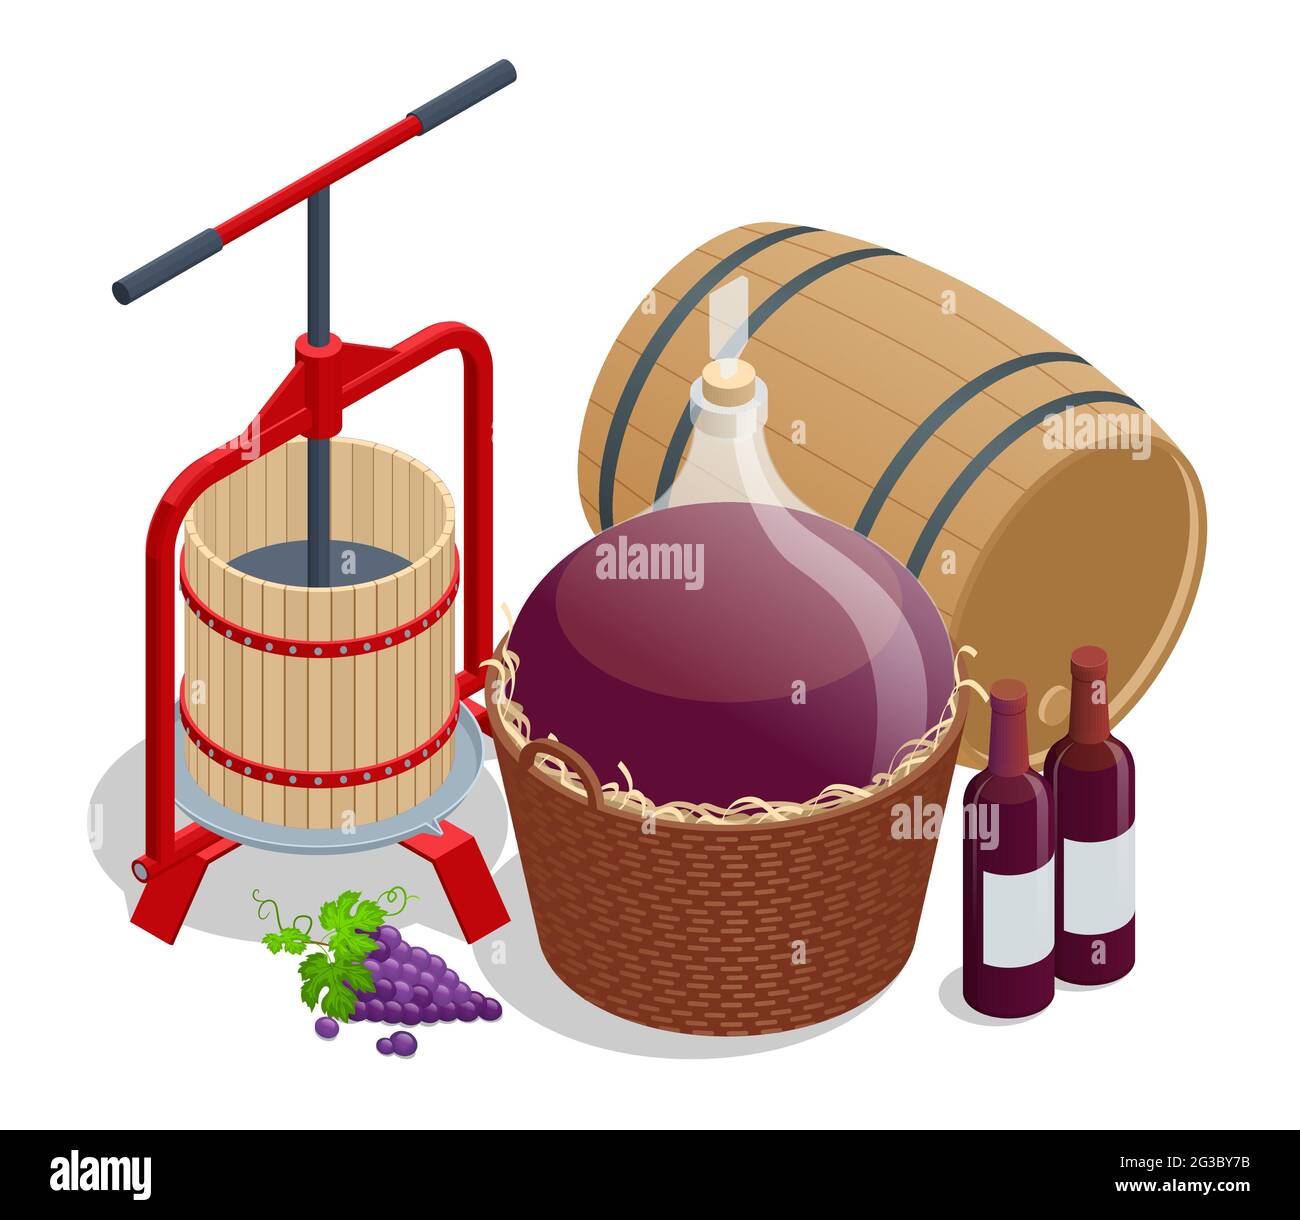 Producción isométrica de vino, trituración y prensado de uvas, envejecimiento y embotellado. Lagar de vendimia con mosto rojo y tornillo helicoidal Ilustración del Vector